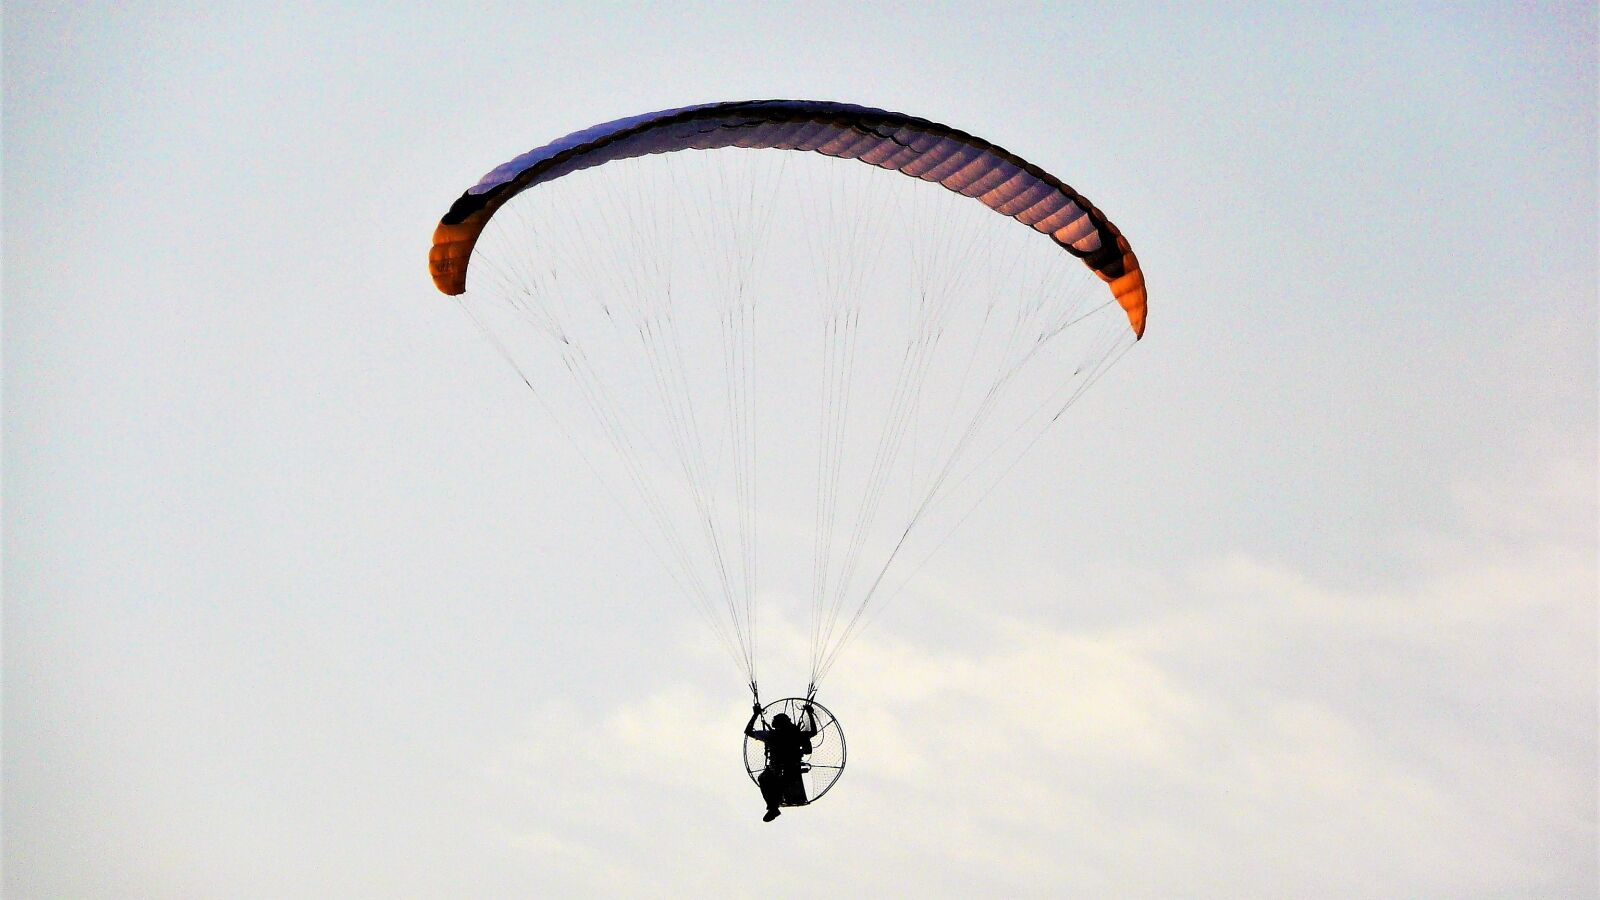 Panasonic DMC-TZ3 sample photo. Parachute, fly, the earth's photography